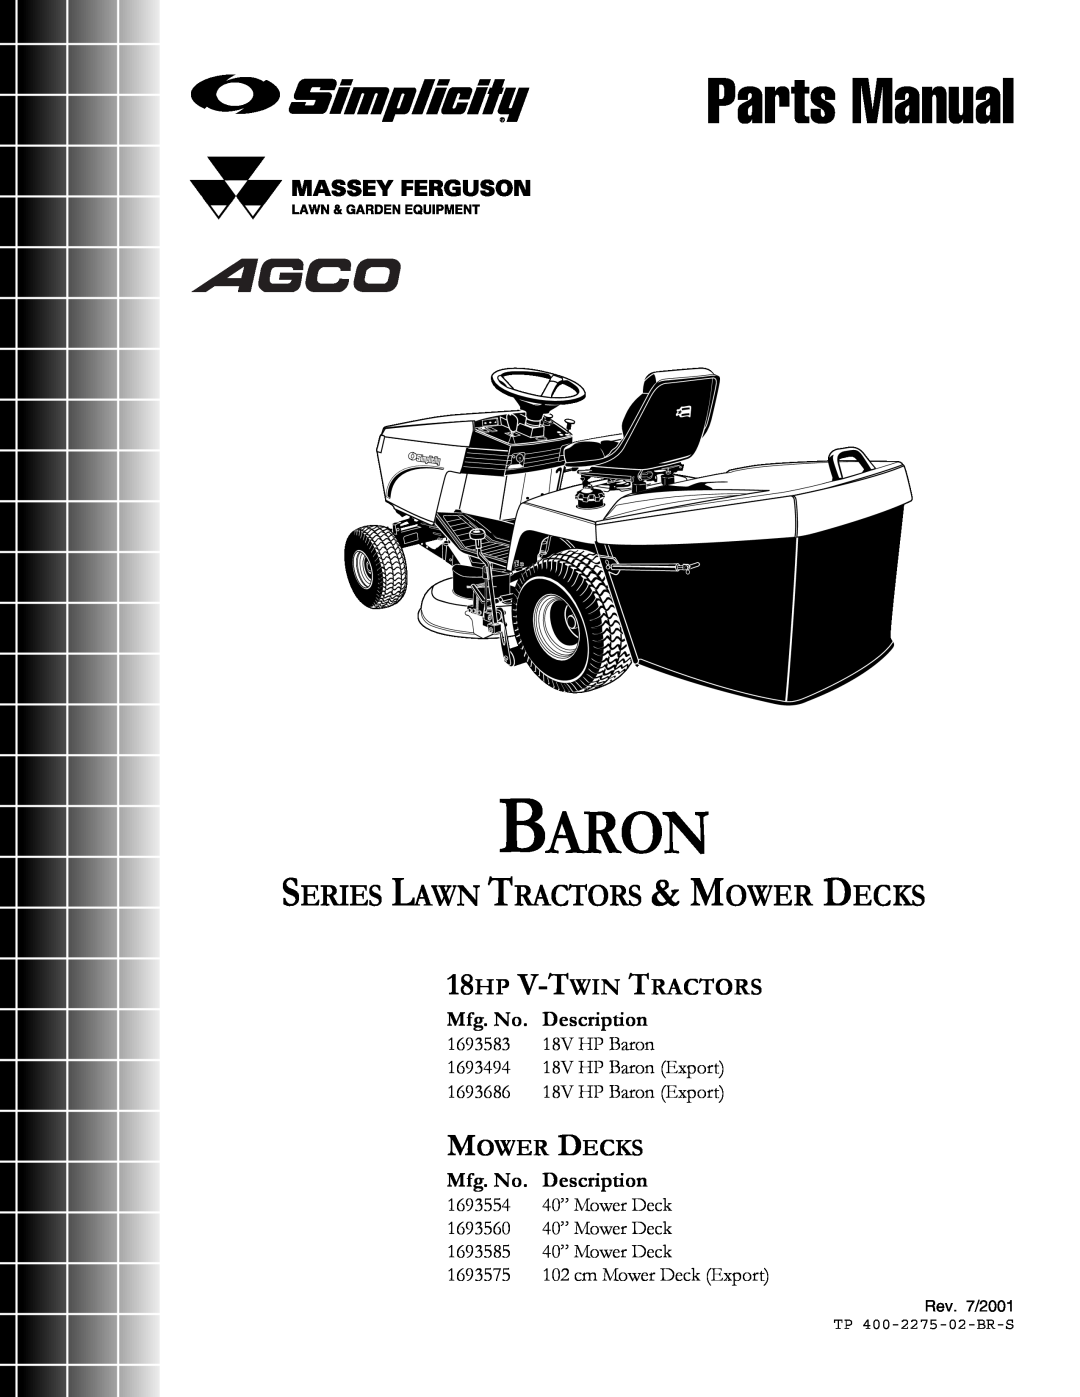 Massey Ferguson L&G 1693583 manual Parts Manual, Baron, Series Lawn Tractors & Mower Decks, 18HP V-TWIN TRACTORS 